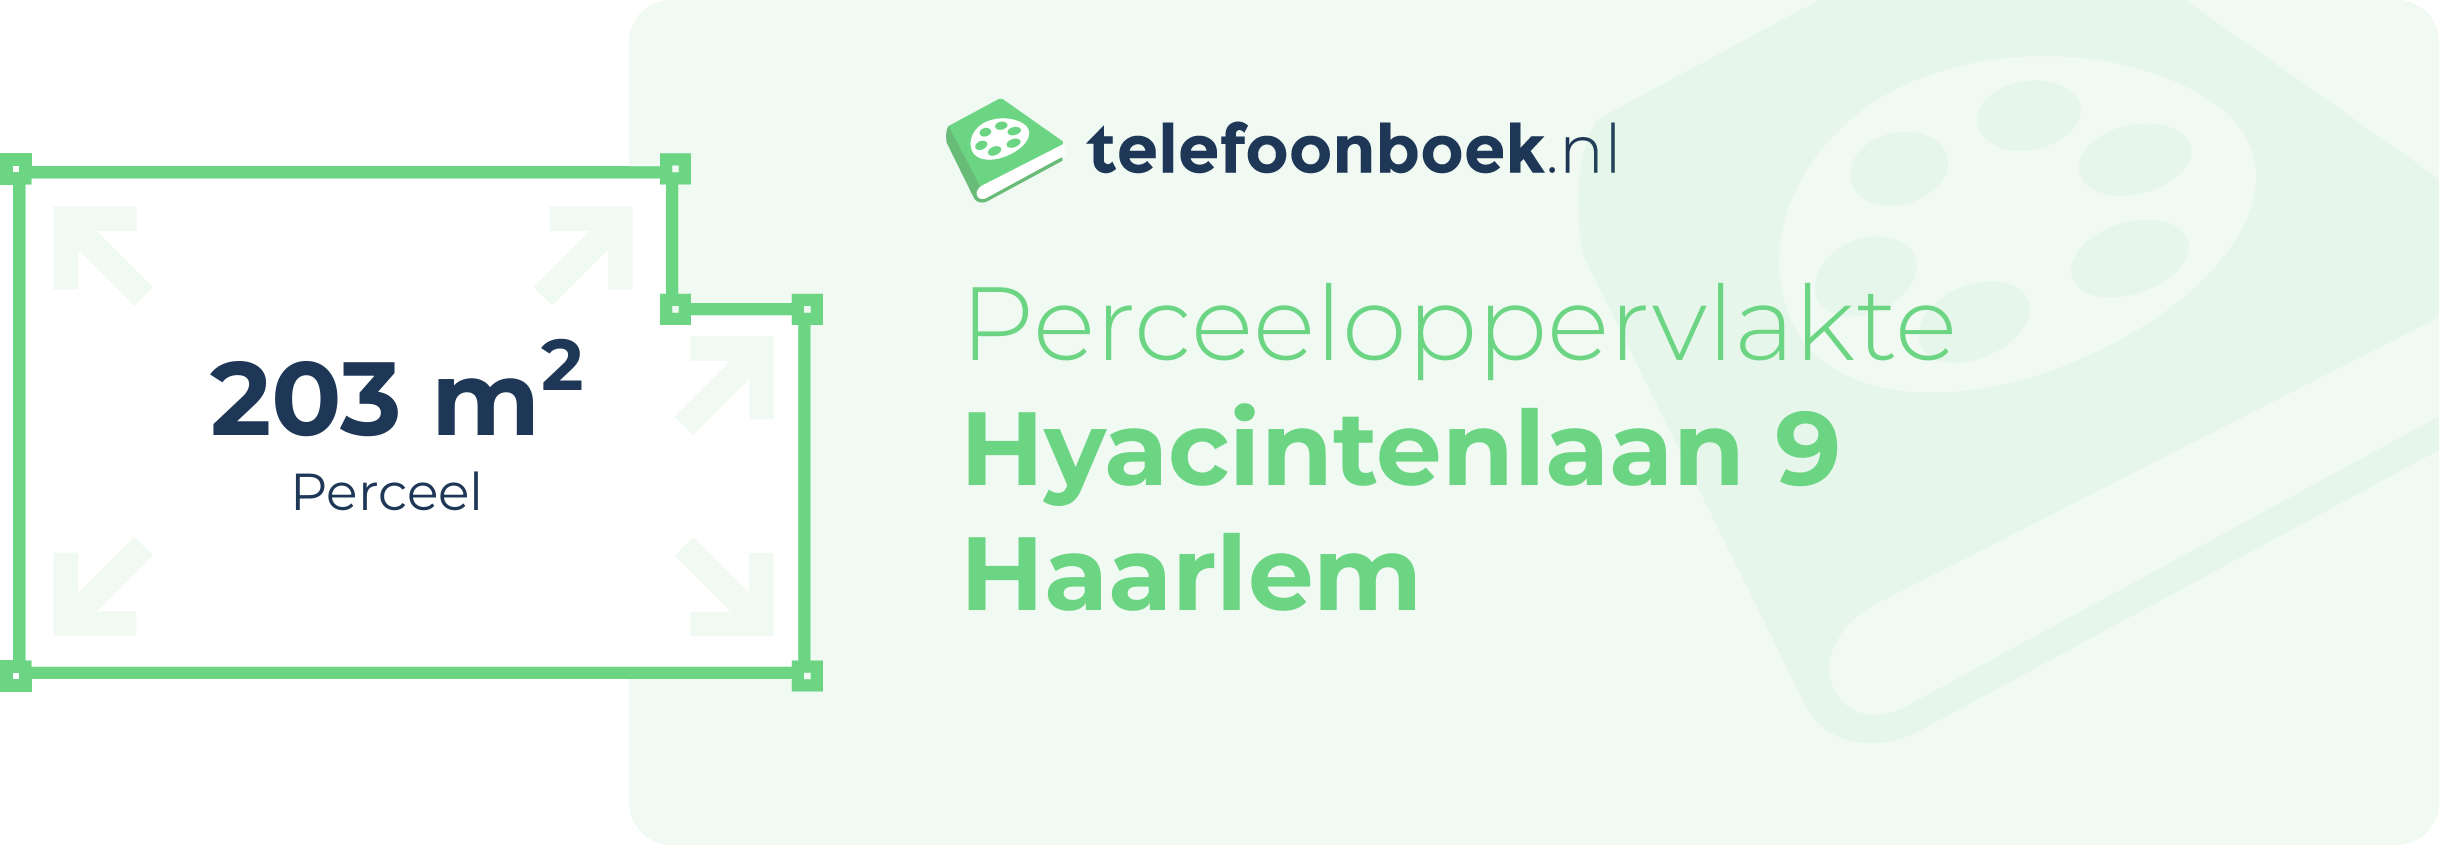 Perceeloppervlakte Hyacintenlaan 9 Haarlem